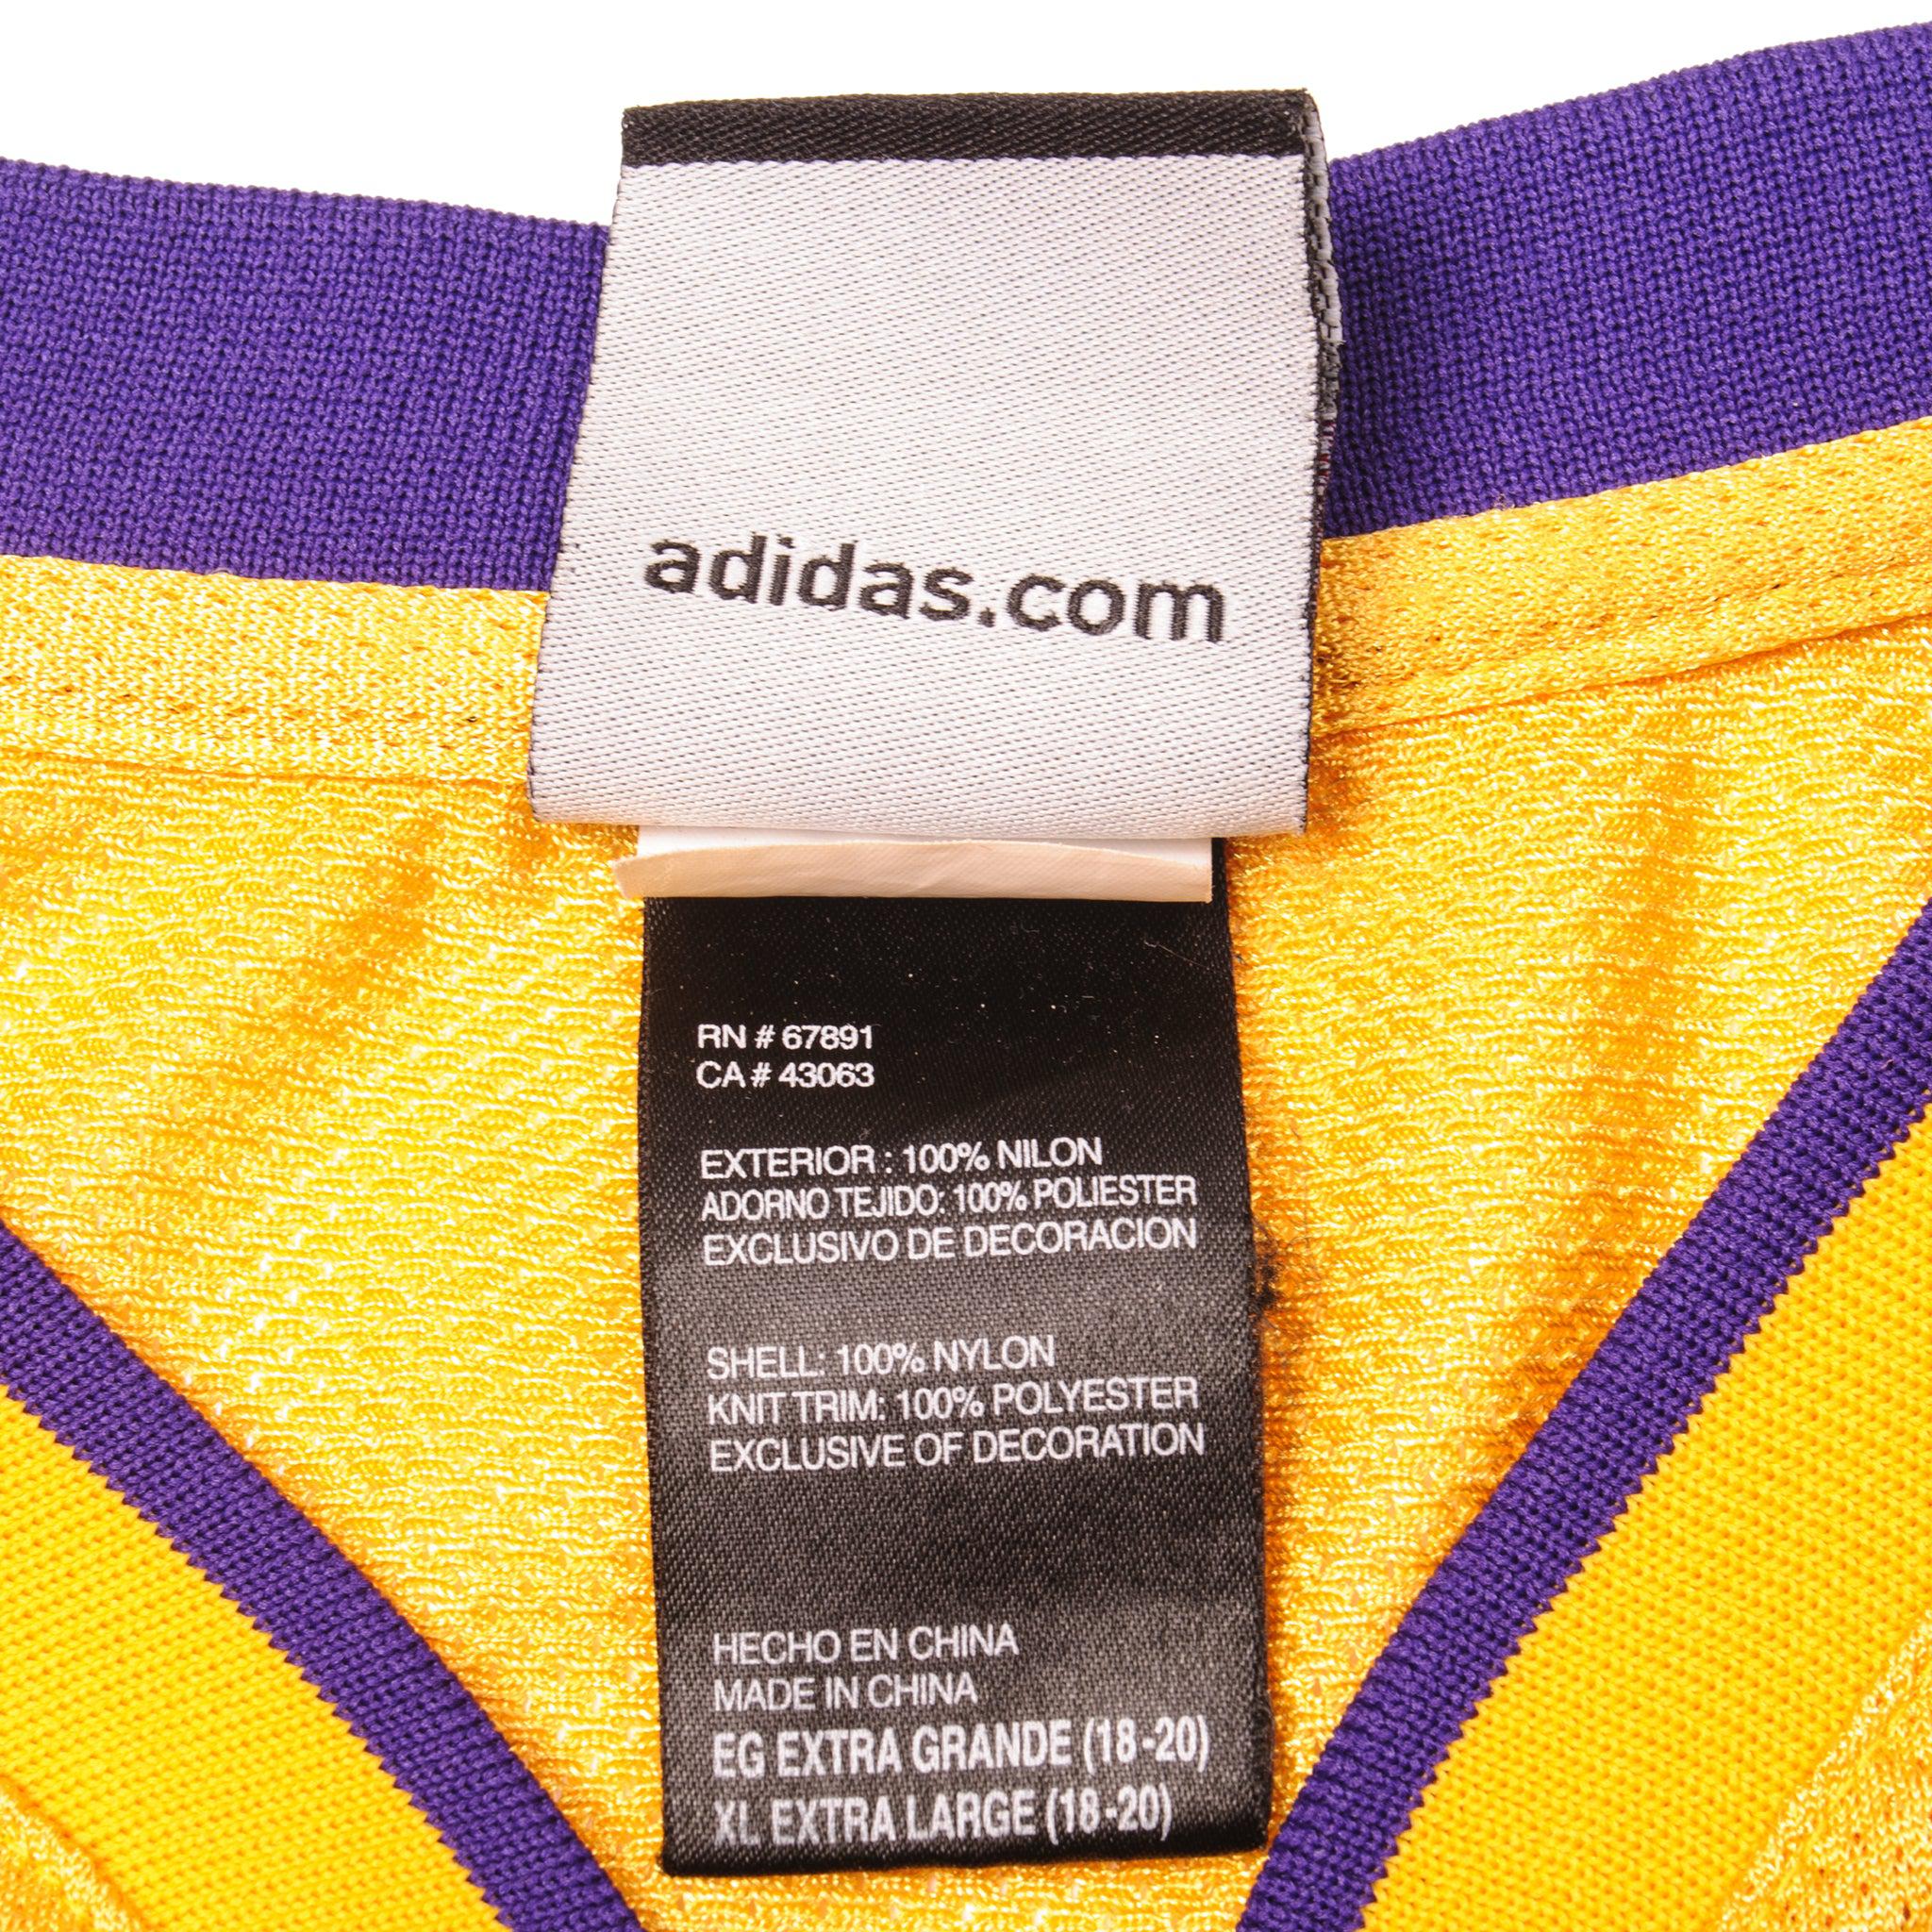 Kobe Bryant 24 Adidas Lakers Jersey Extra Extra Large